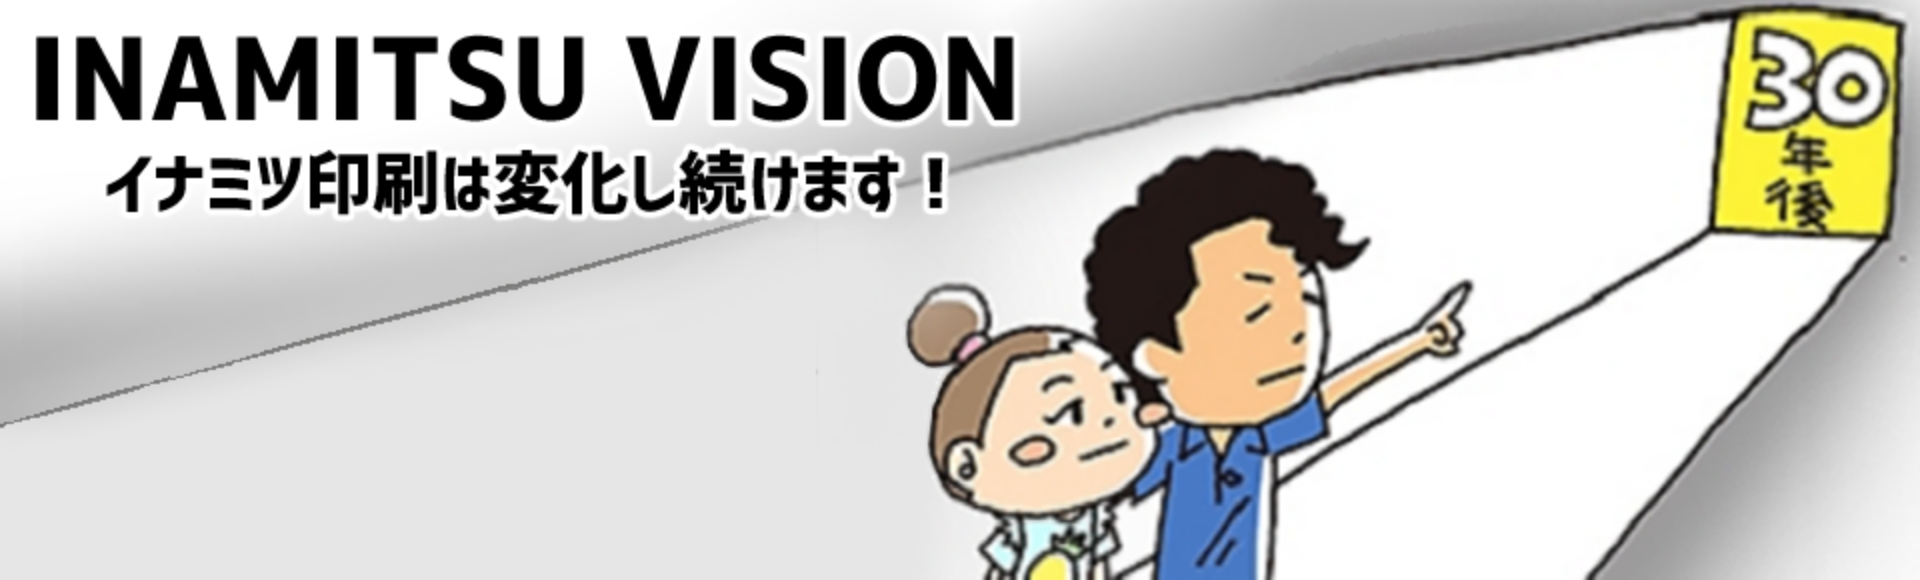 Inamitsu Vision